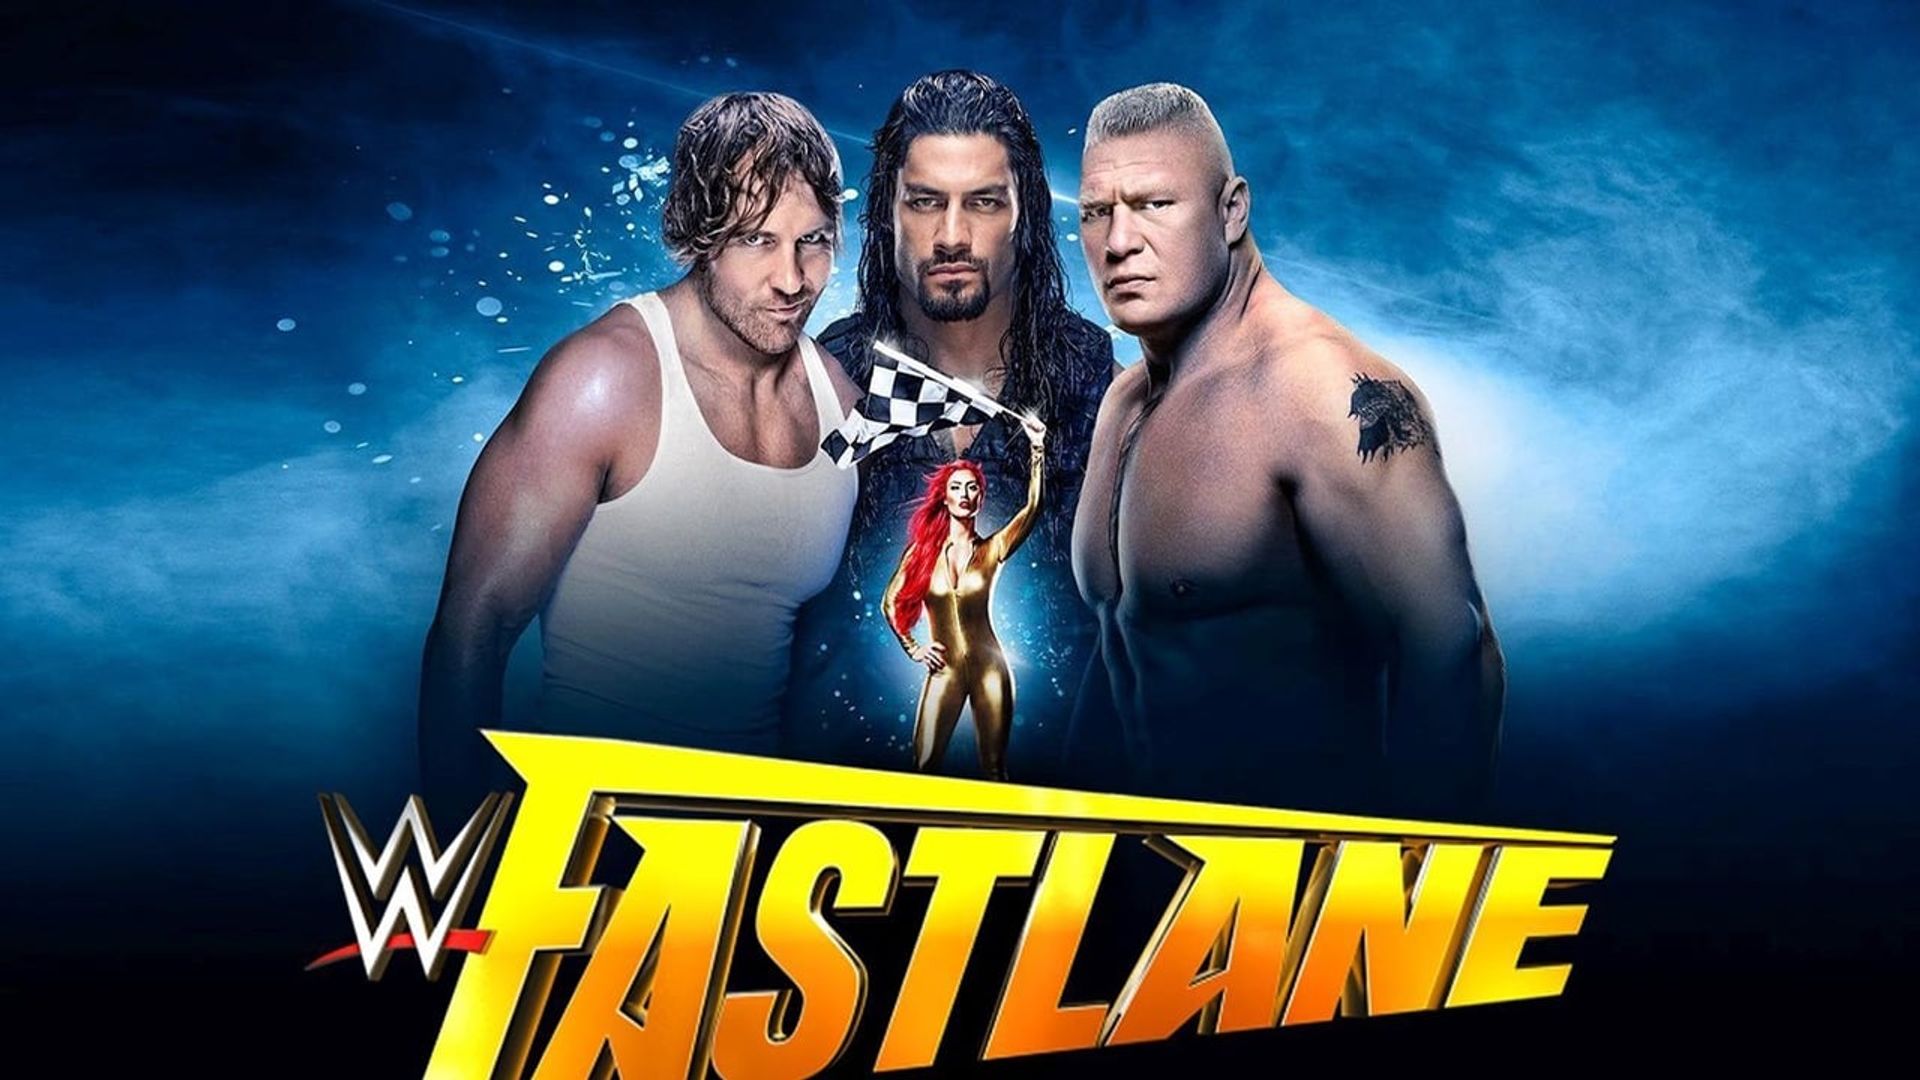 WWE Fastlane 2016 Backdrop